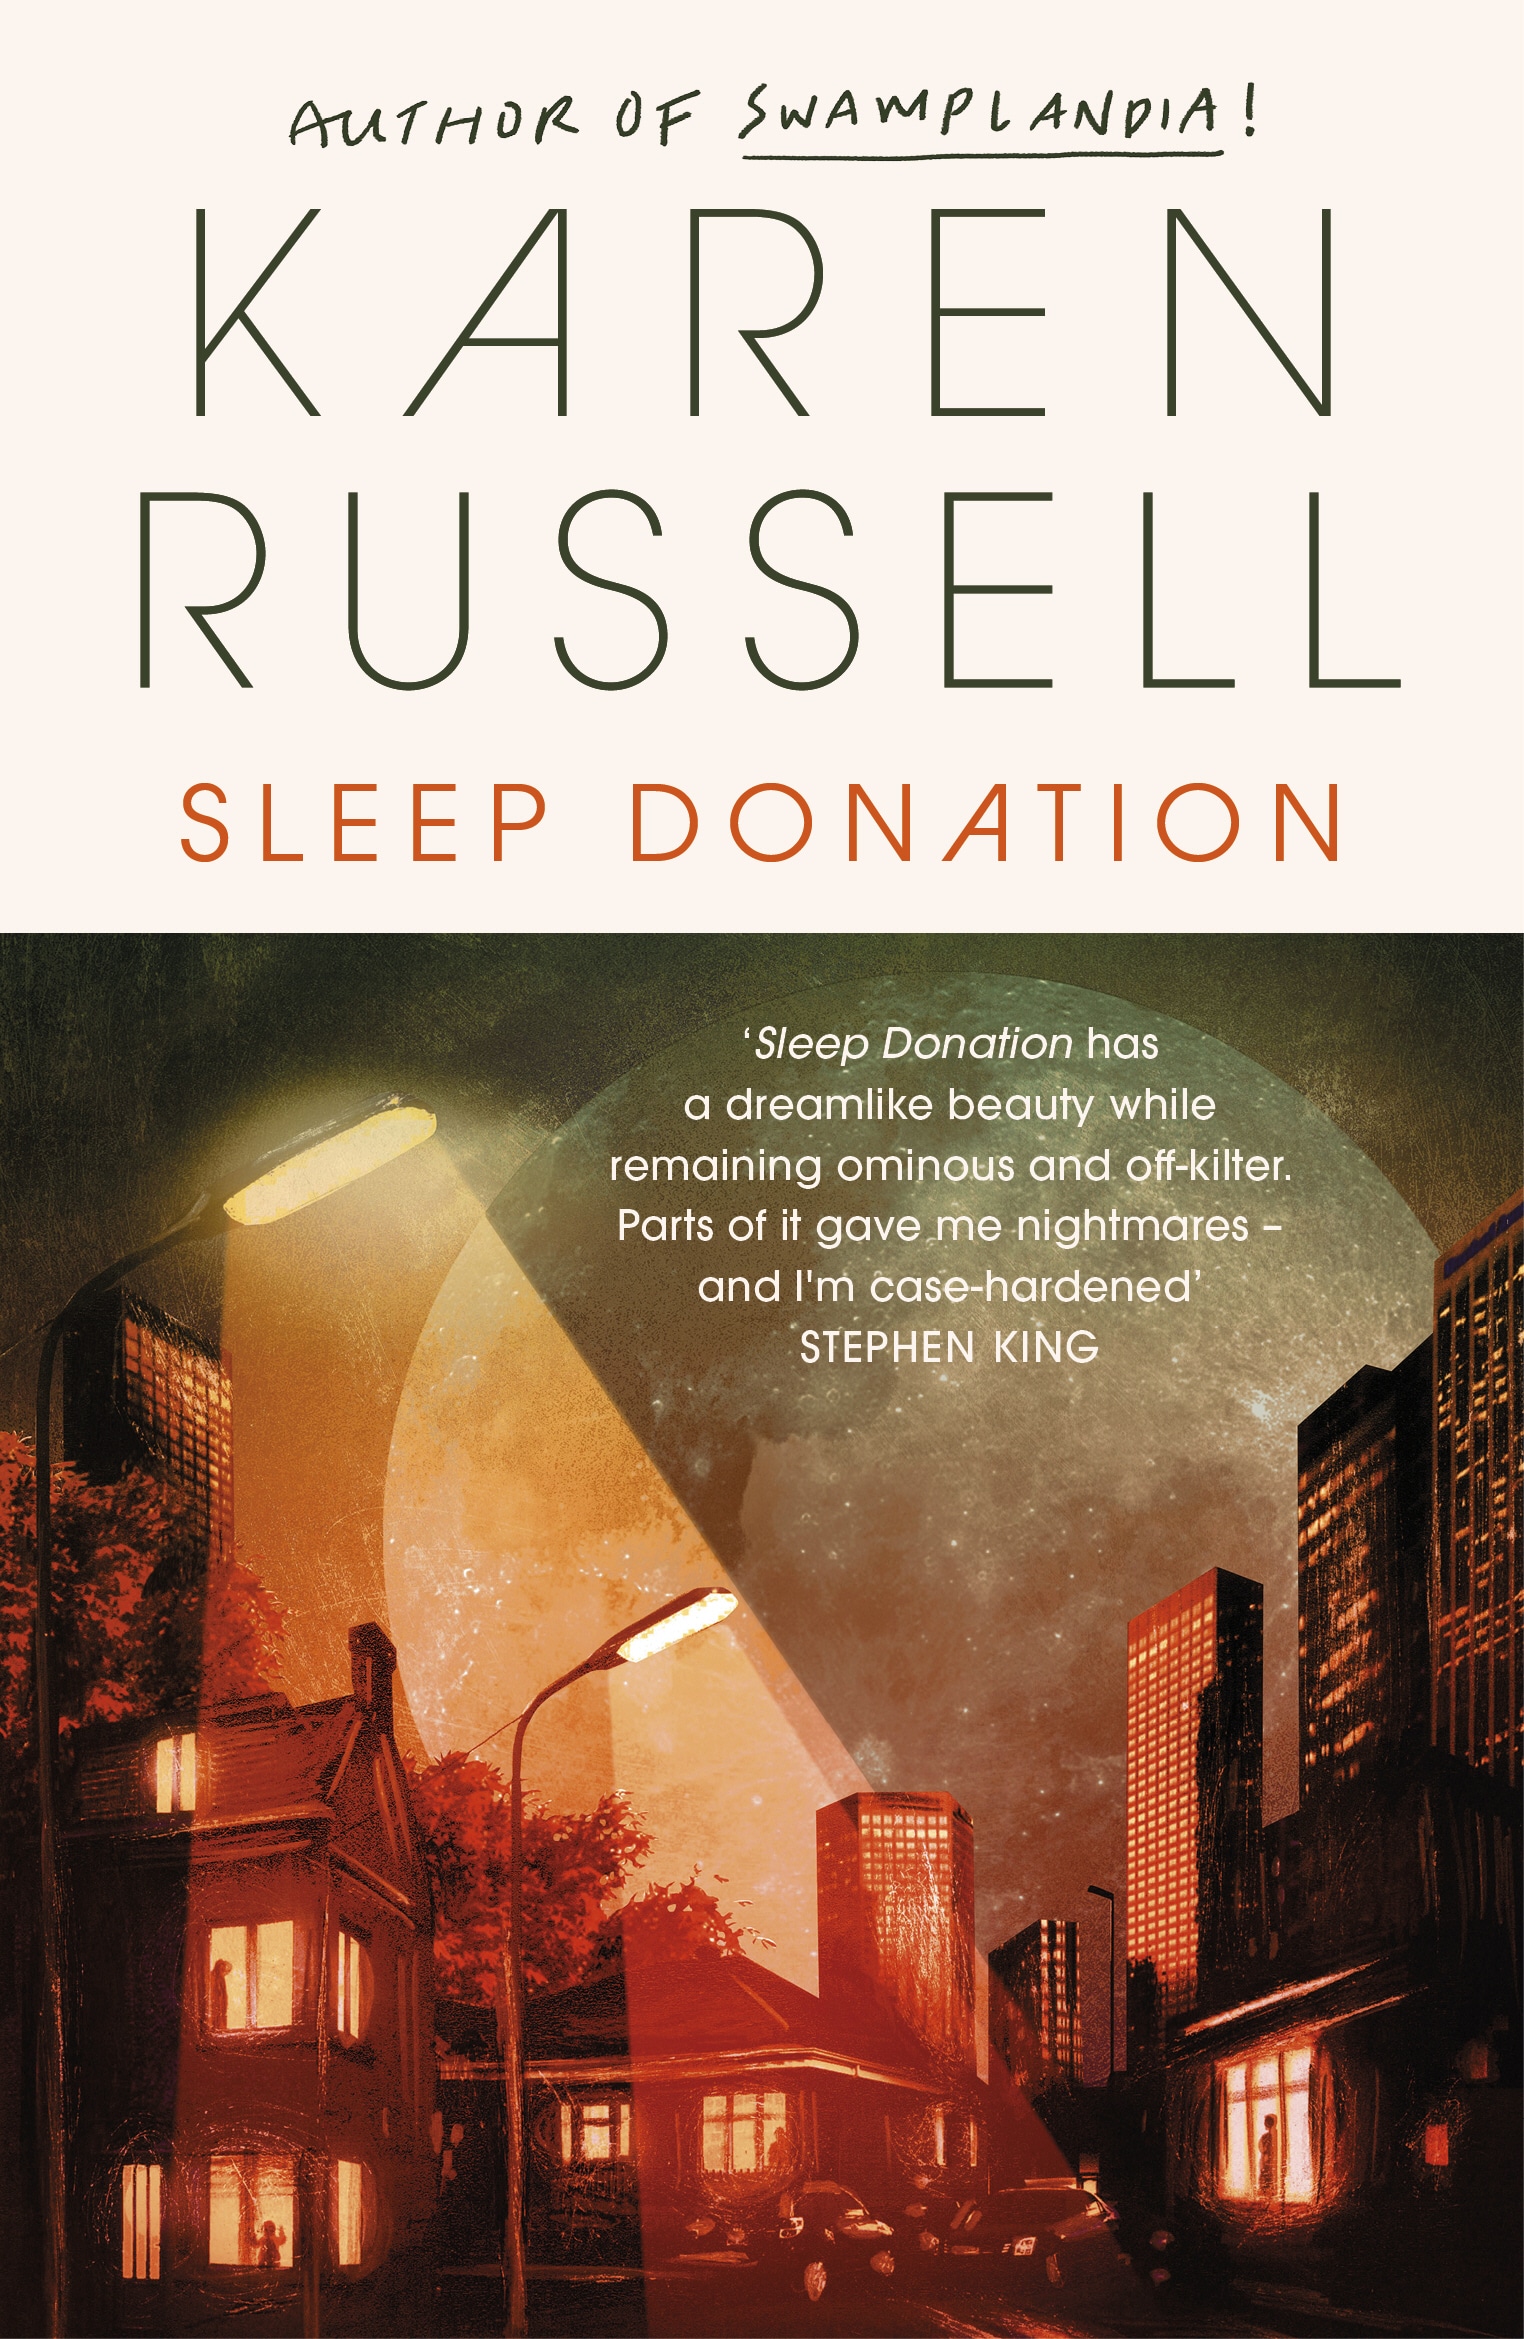 Book “Sleep Donation” by Karen Russell — September 29, 2020